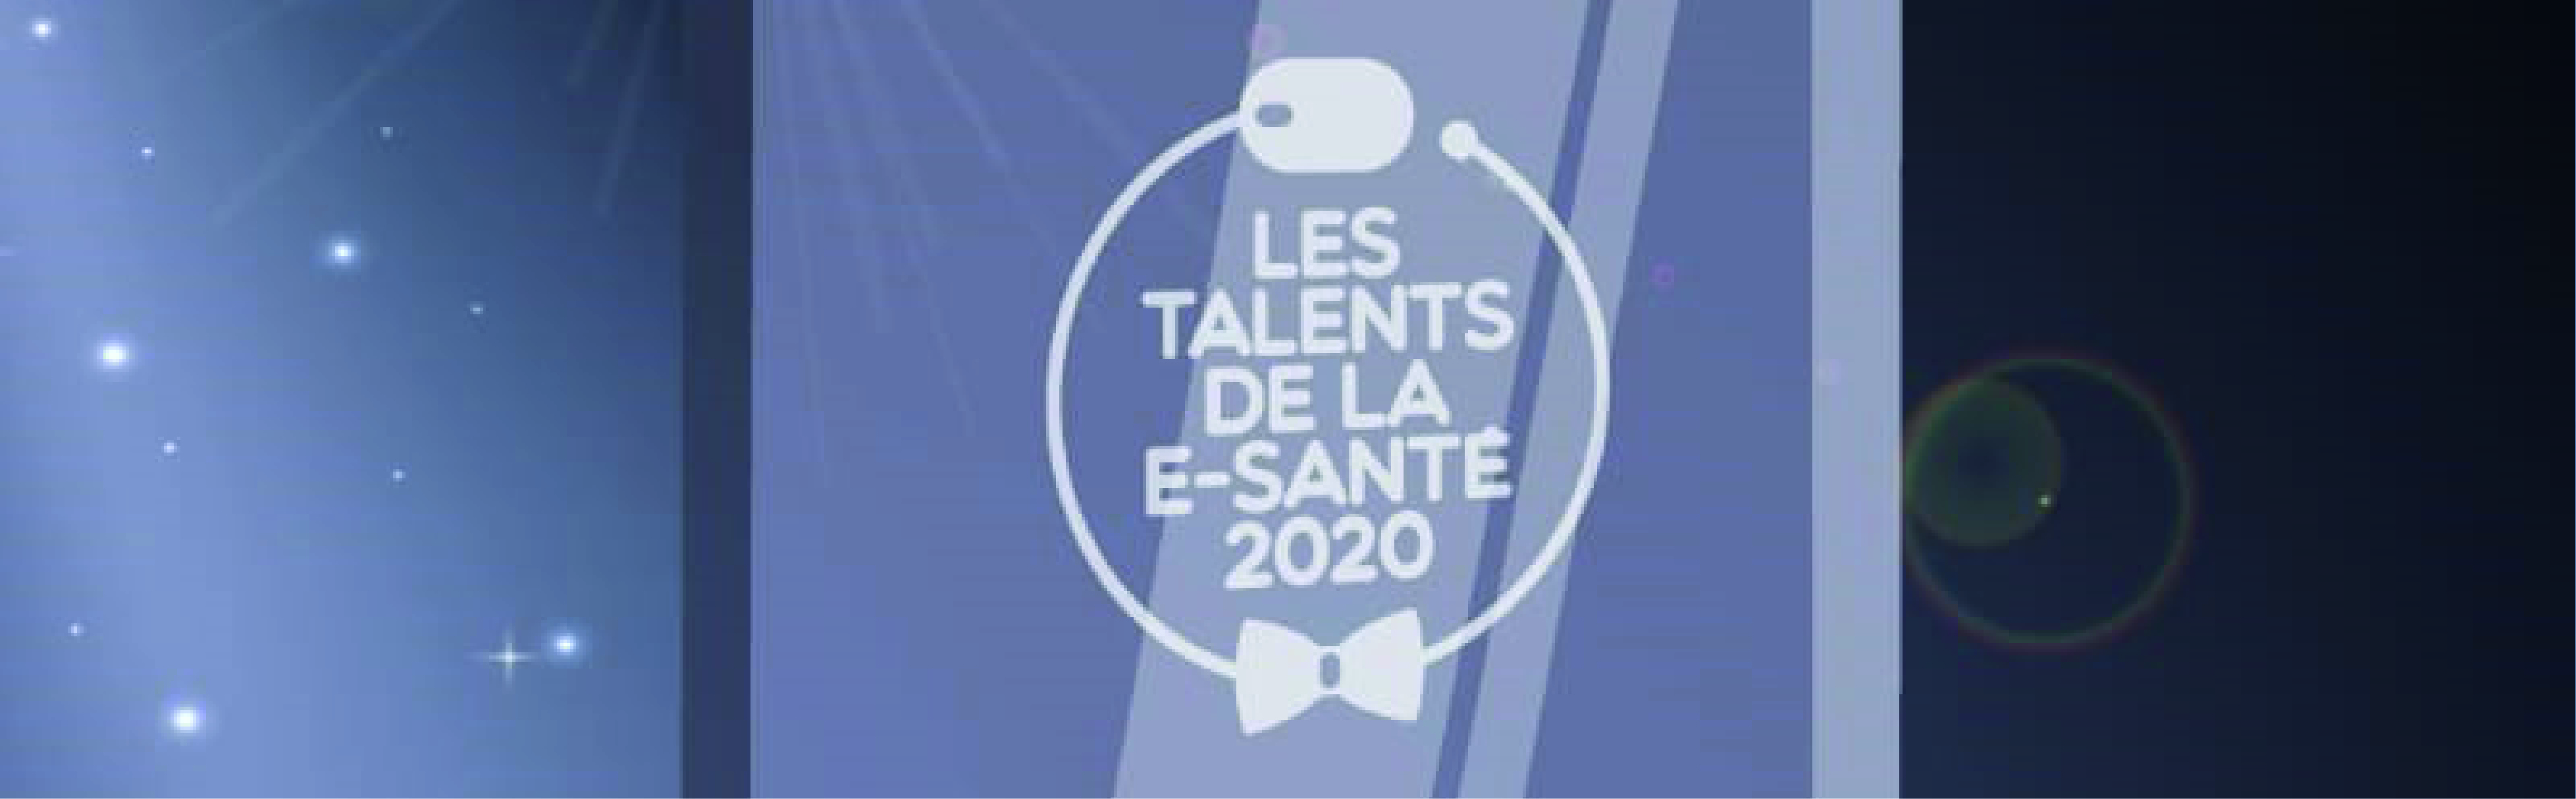 Les talents de la e-santé 2020